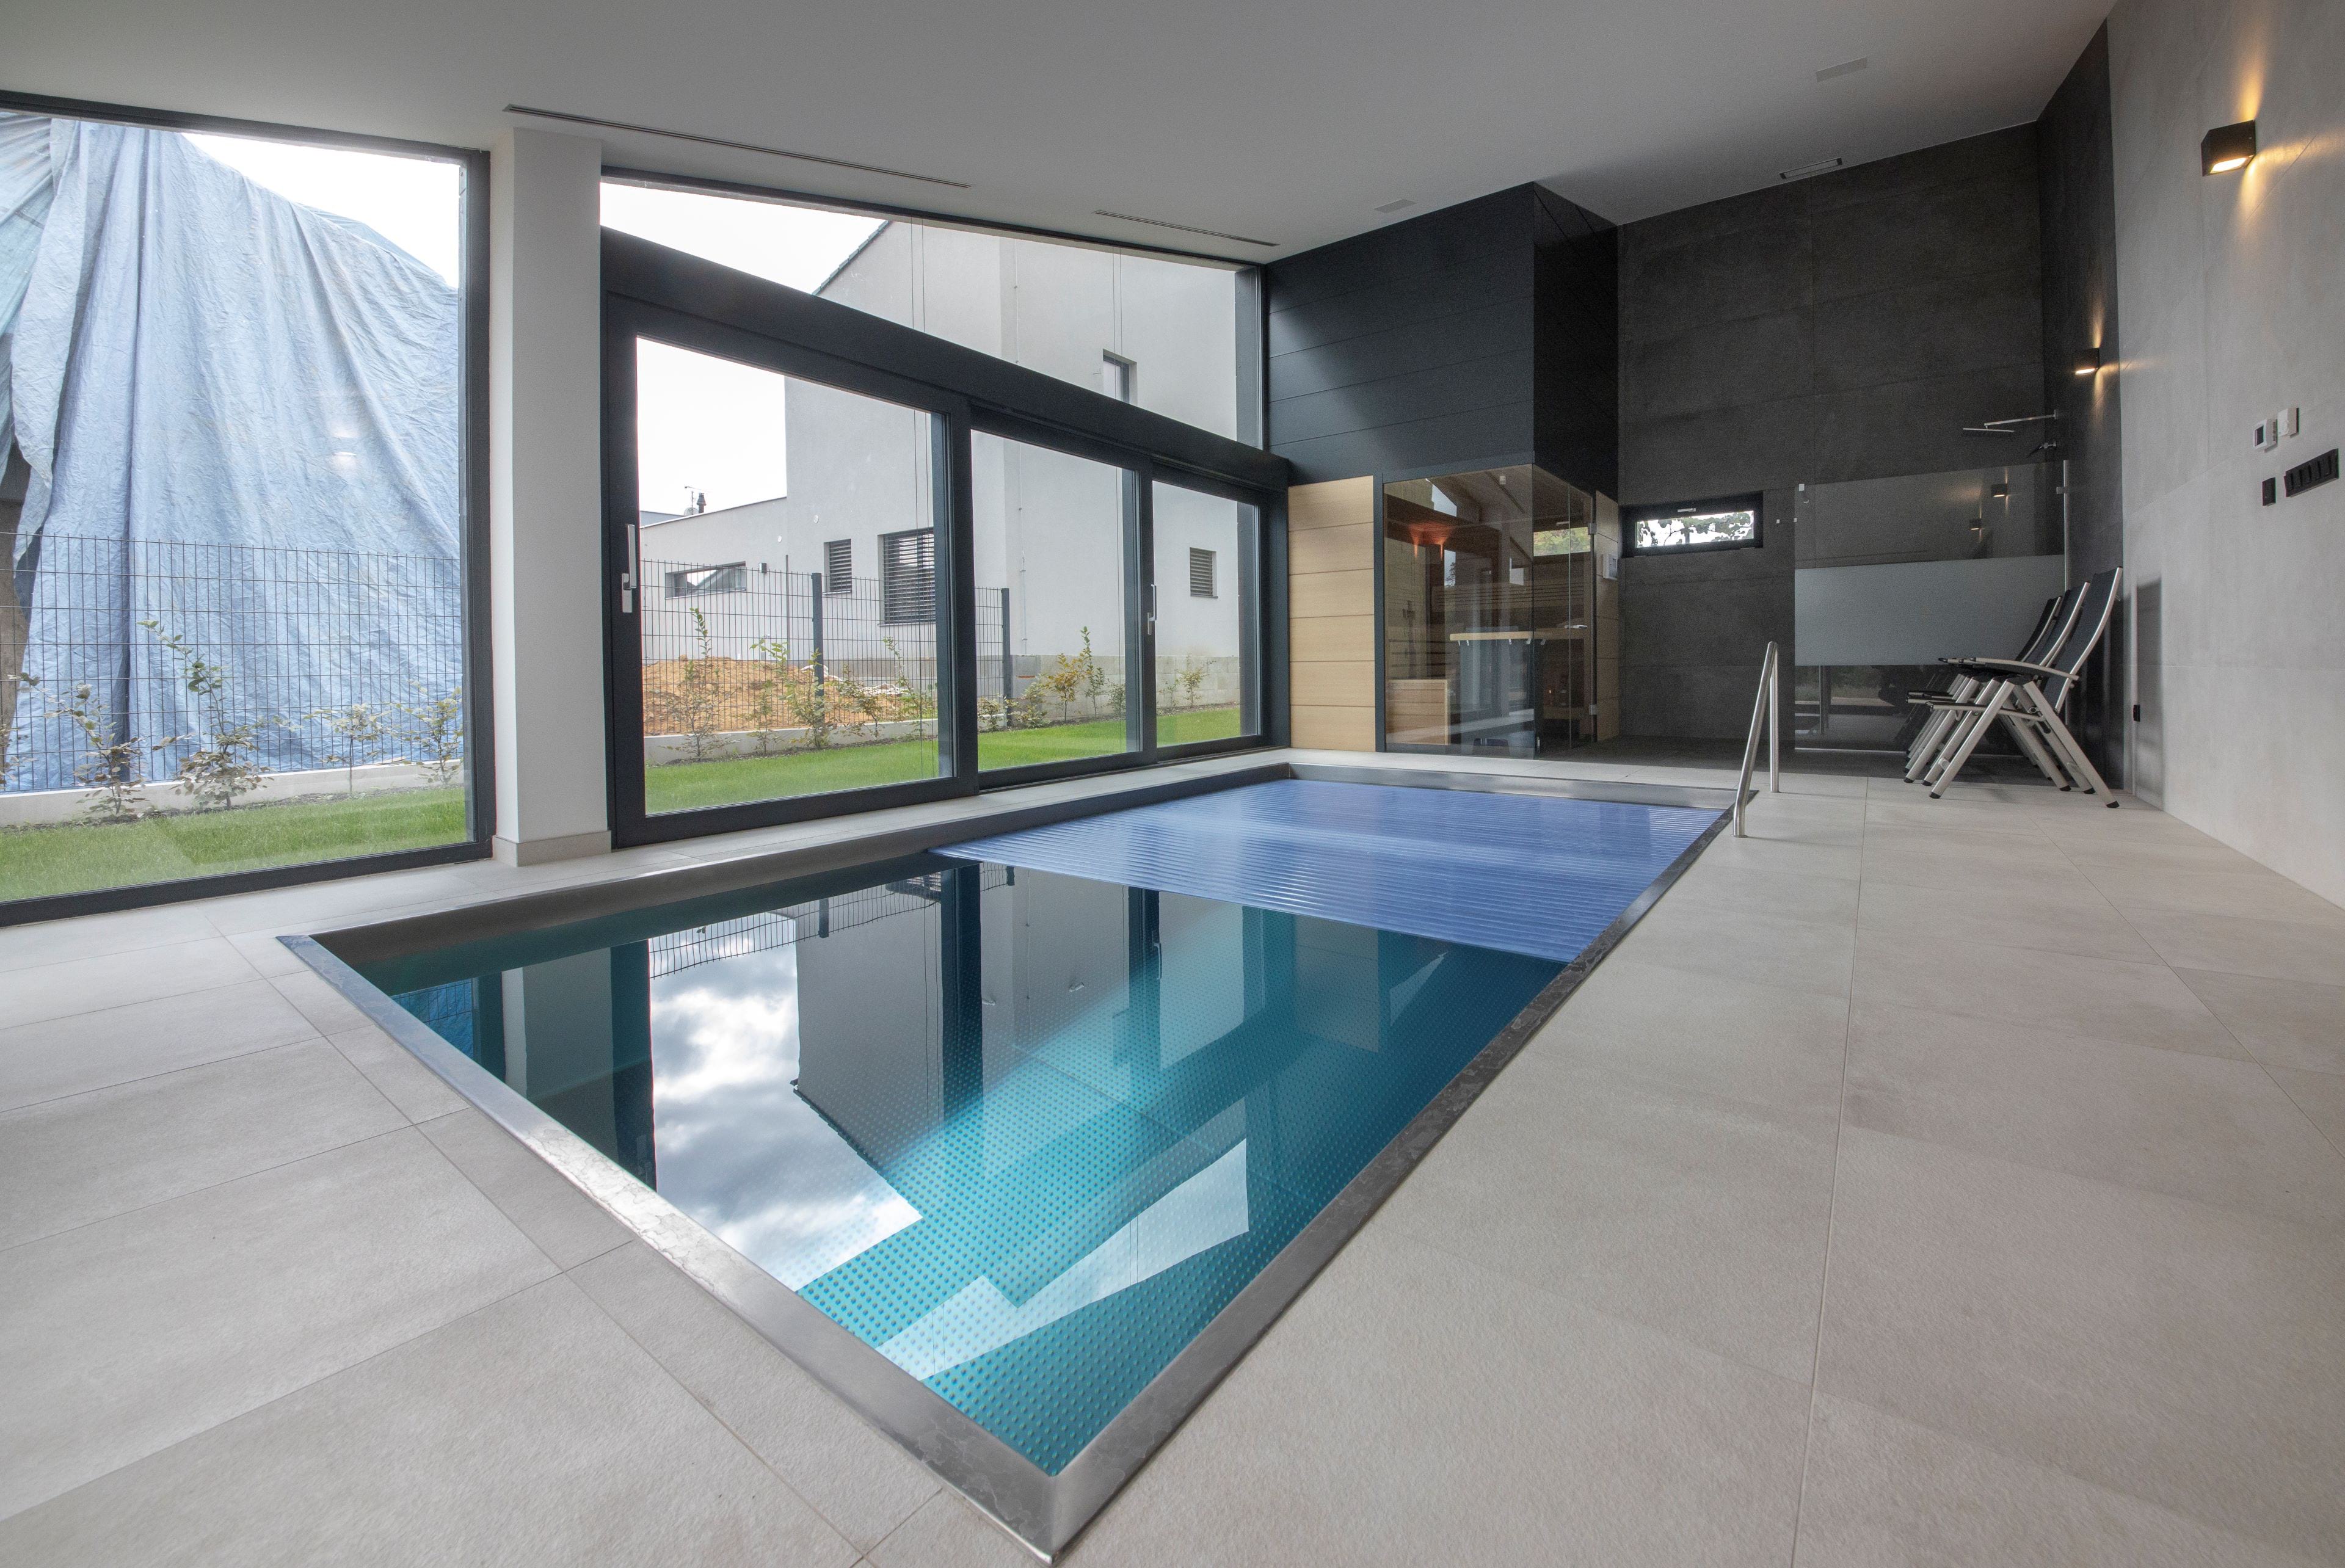 Nerezový bazén s automatickou roletou v interiéru soukromé wellness zóny